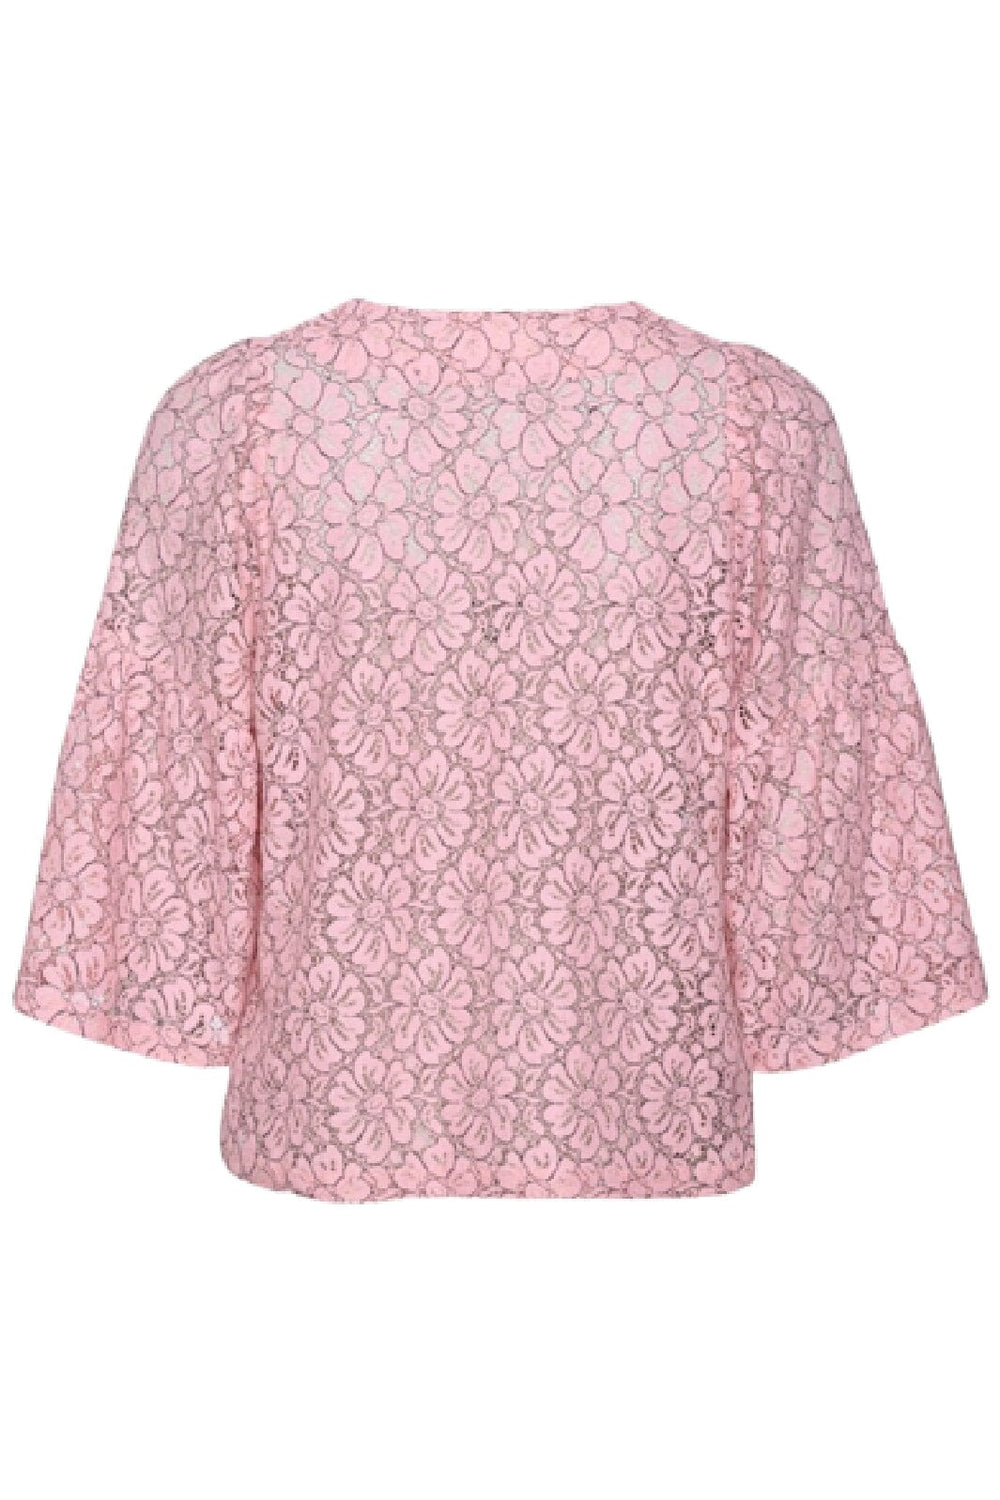 Forudbestilling - Sissel Edelbo - Lace Leftover Top - Pink Toppe 